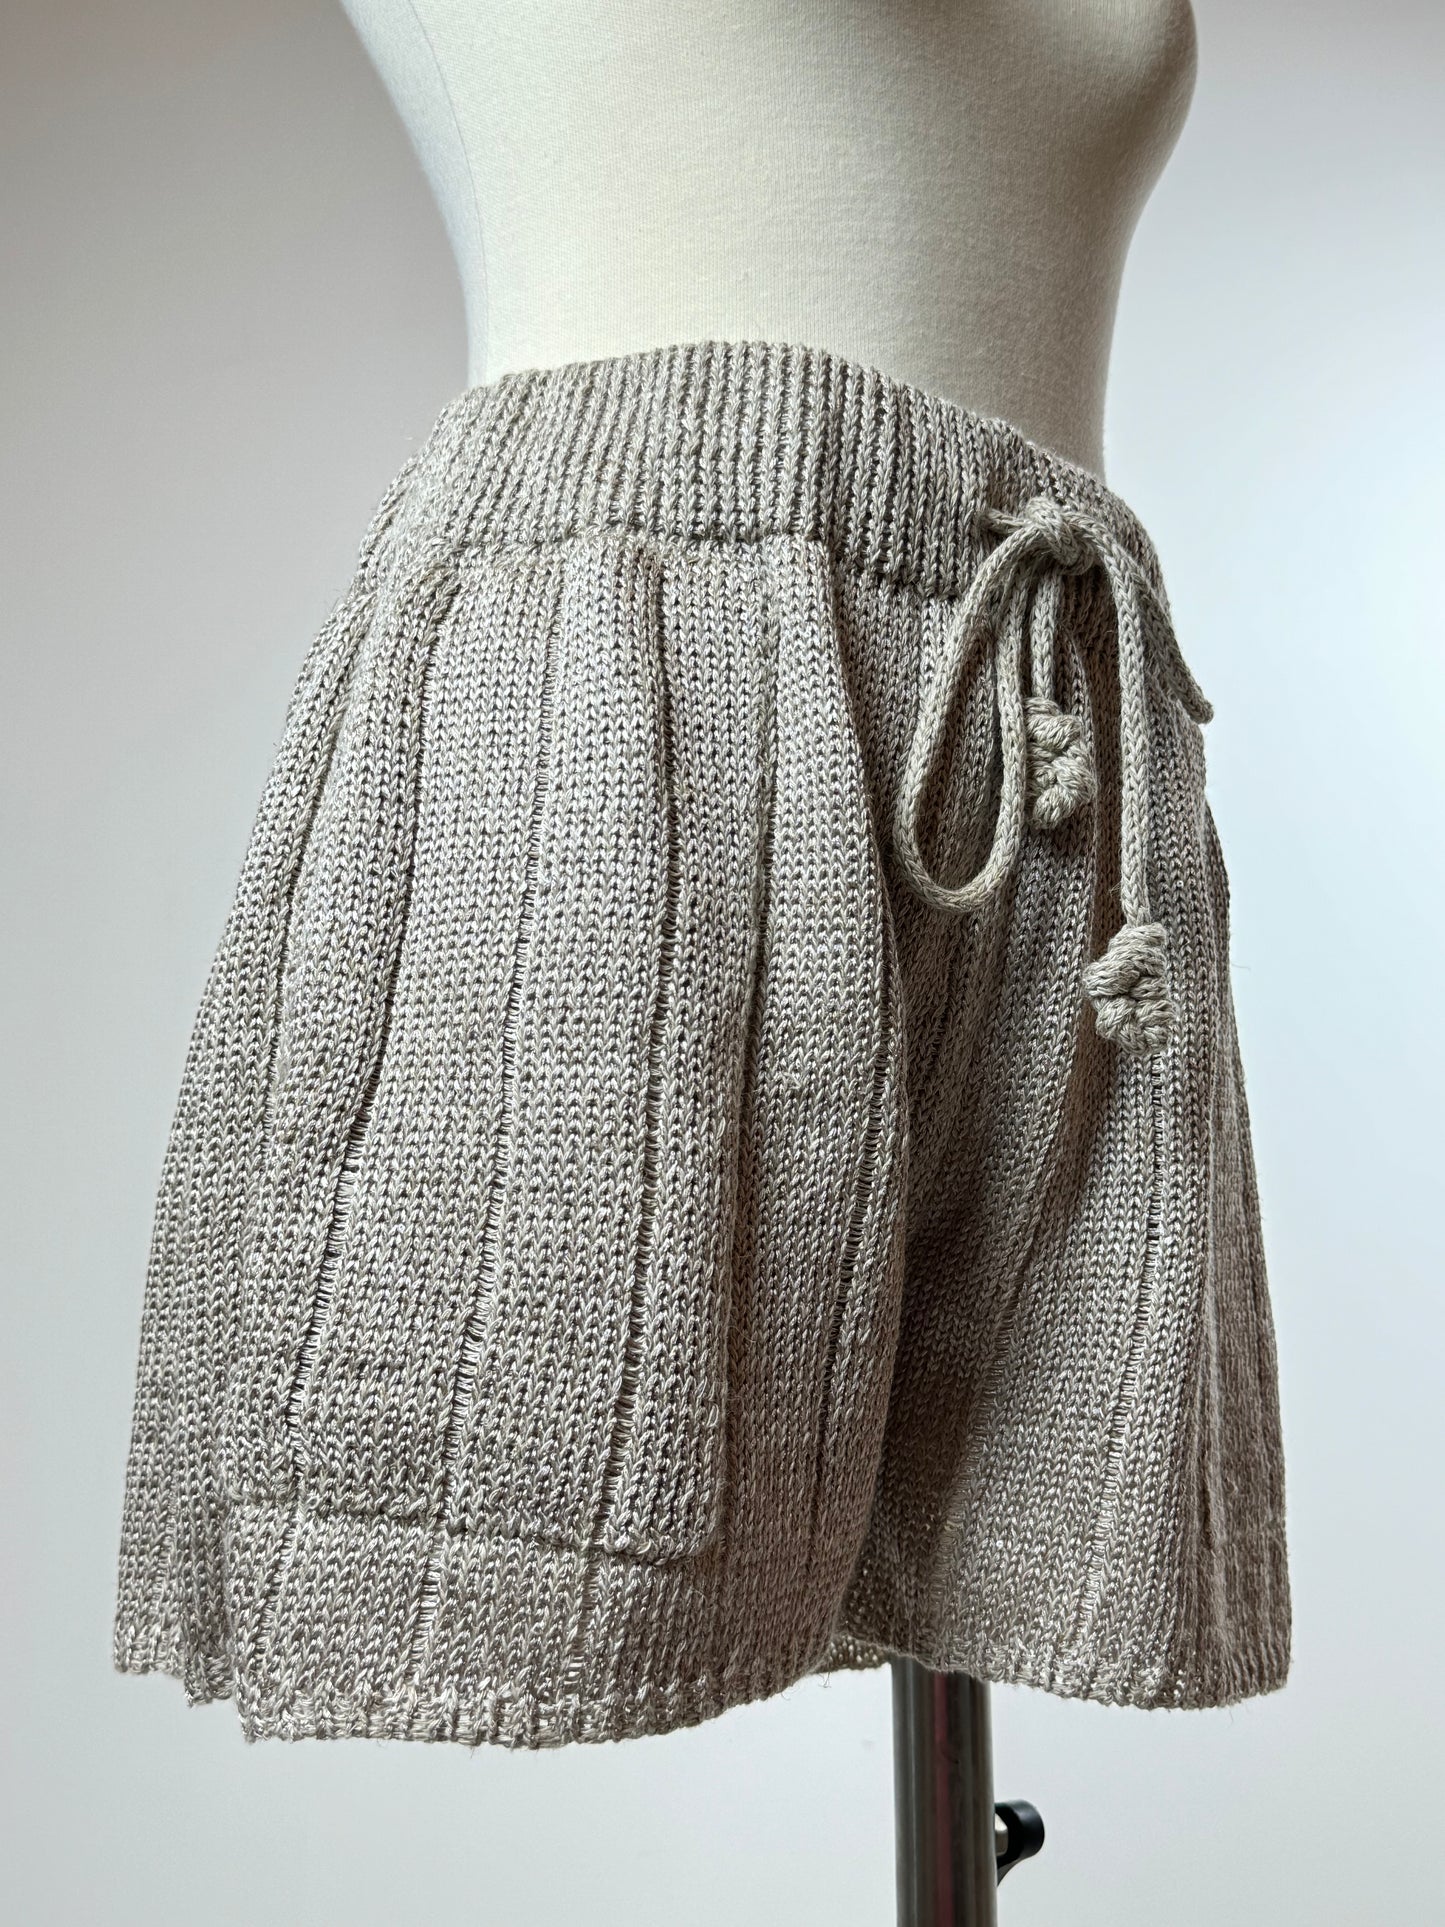 საზაფხულო სელის შორტები/Summer linen shorts S/S 25